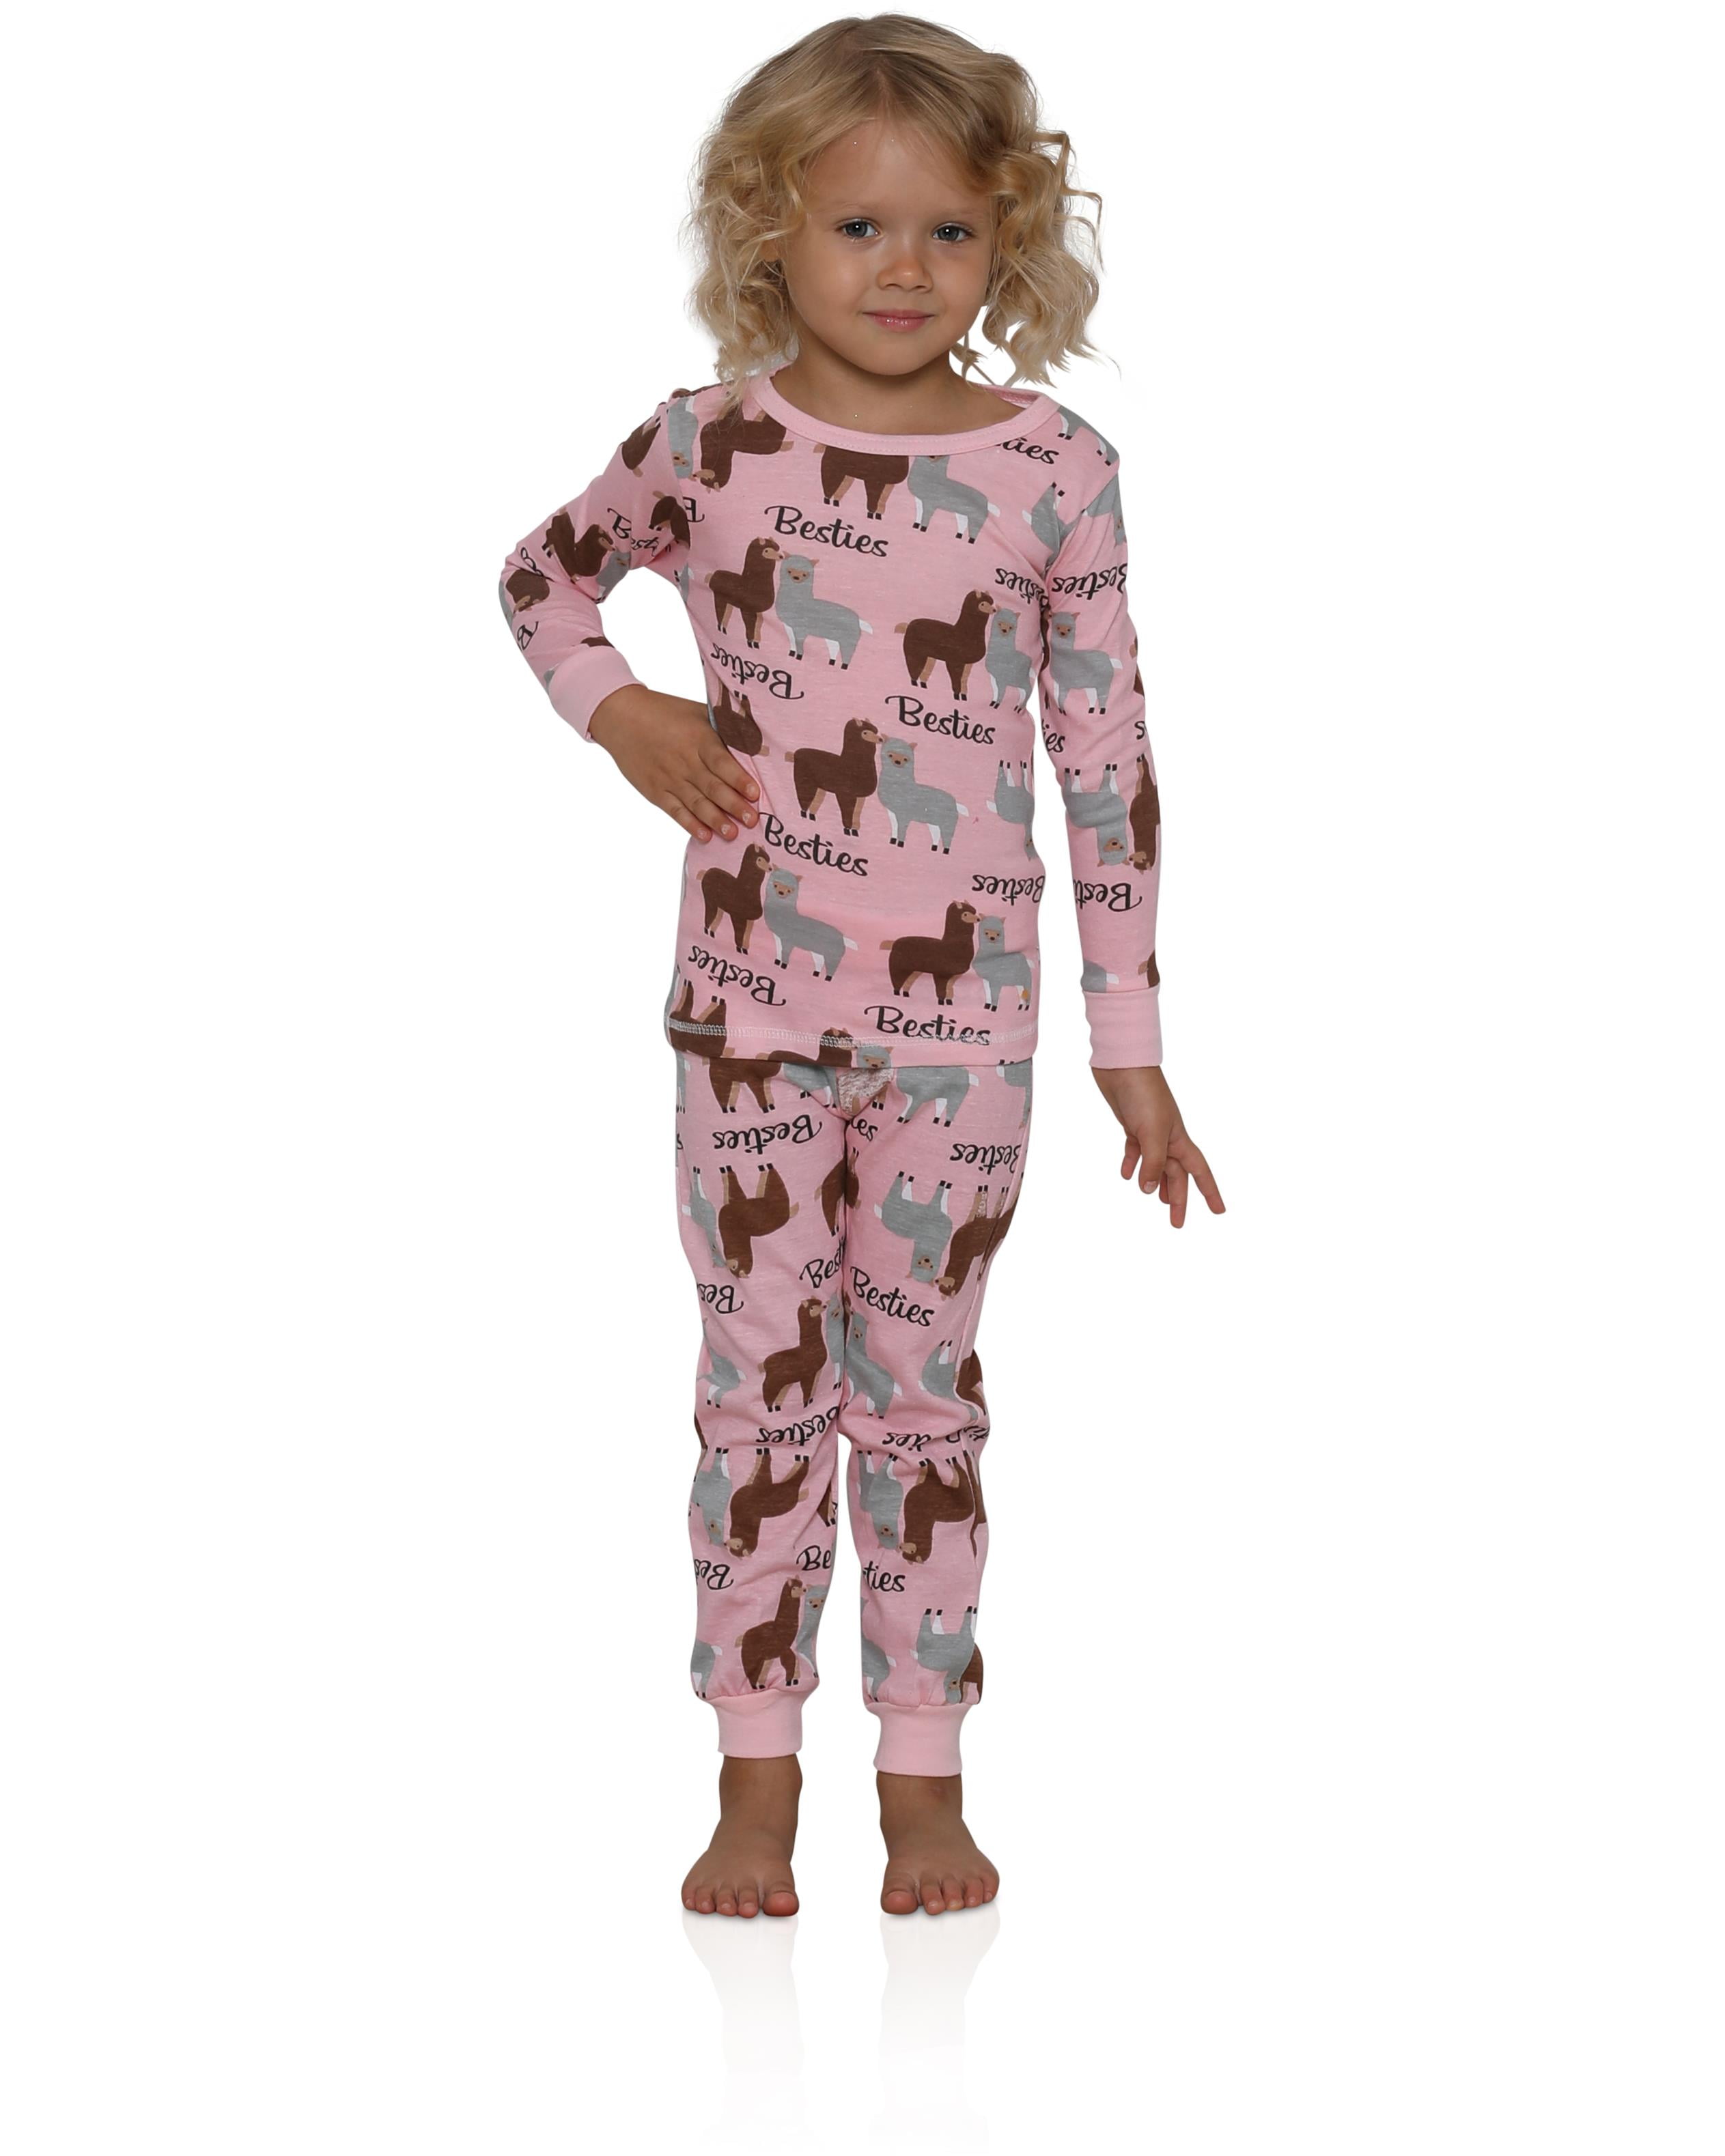 Prestigez Big Girls Two-Piece Pajama Set Female 4-16, Llama, Size: 7-8 ...